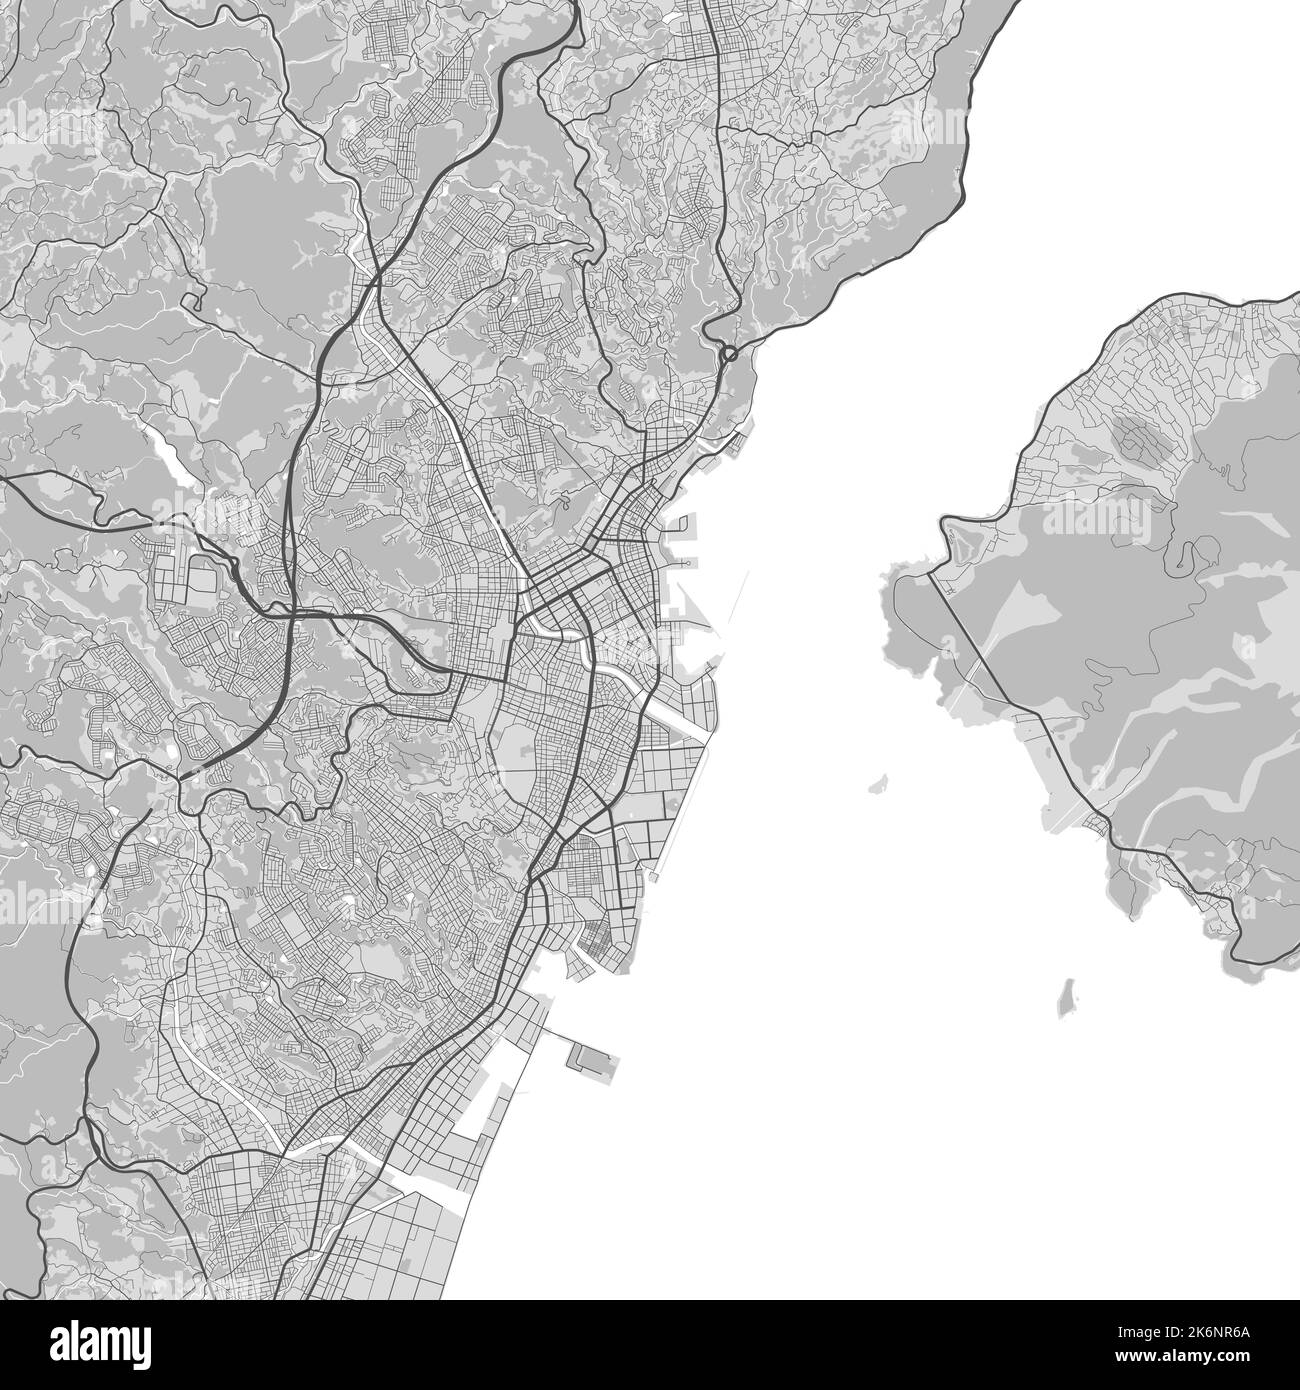 Mappa della città di Kagoshima. Poster in bianco e nero urbano. Immagine della mappa stradale con vista dell'area metropolitana. Illustrazione Vettoriale